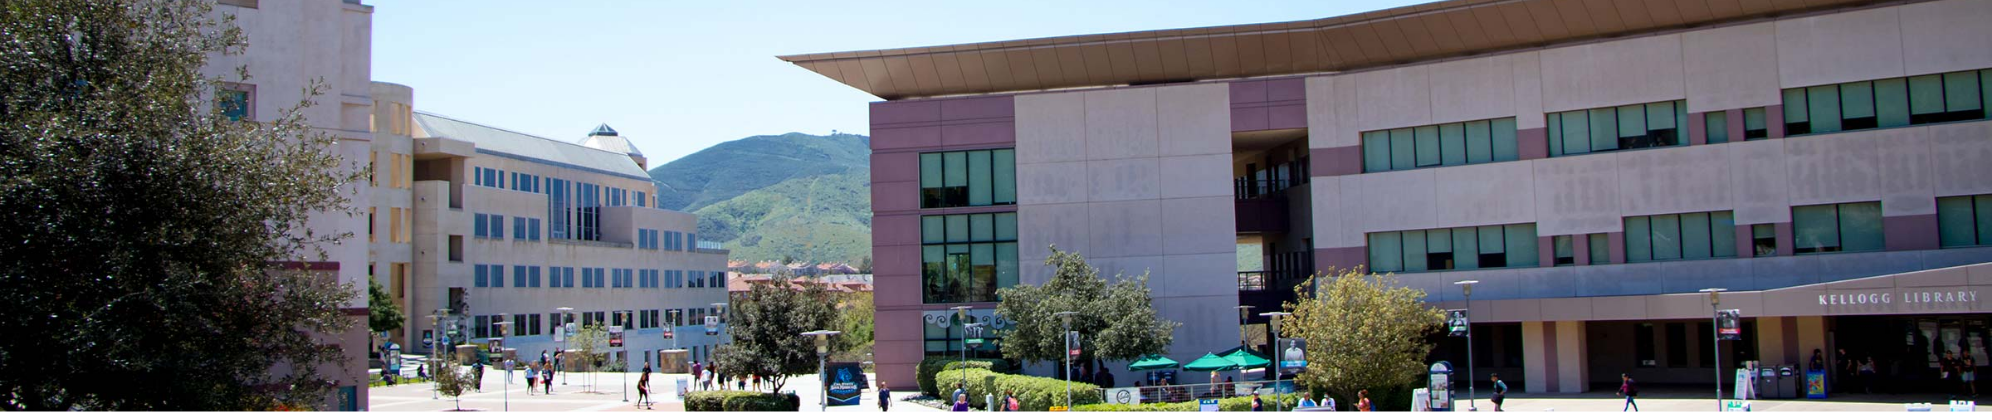 image of CSUSM campus